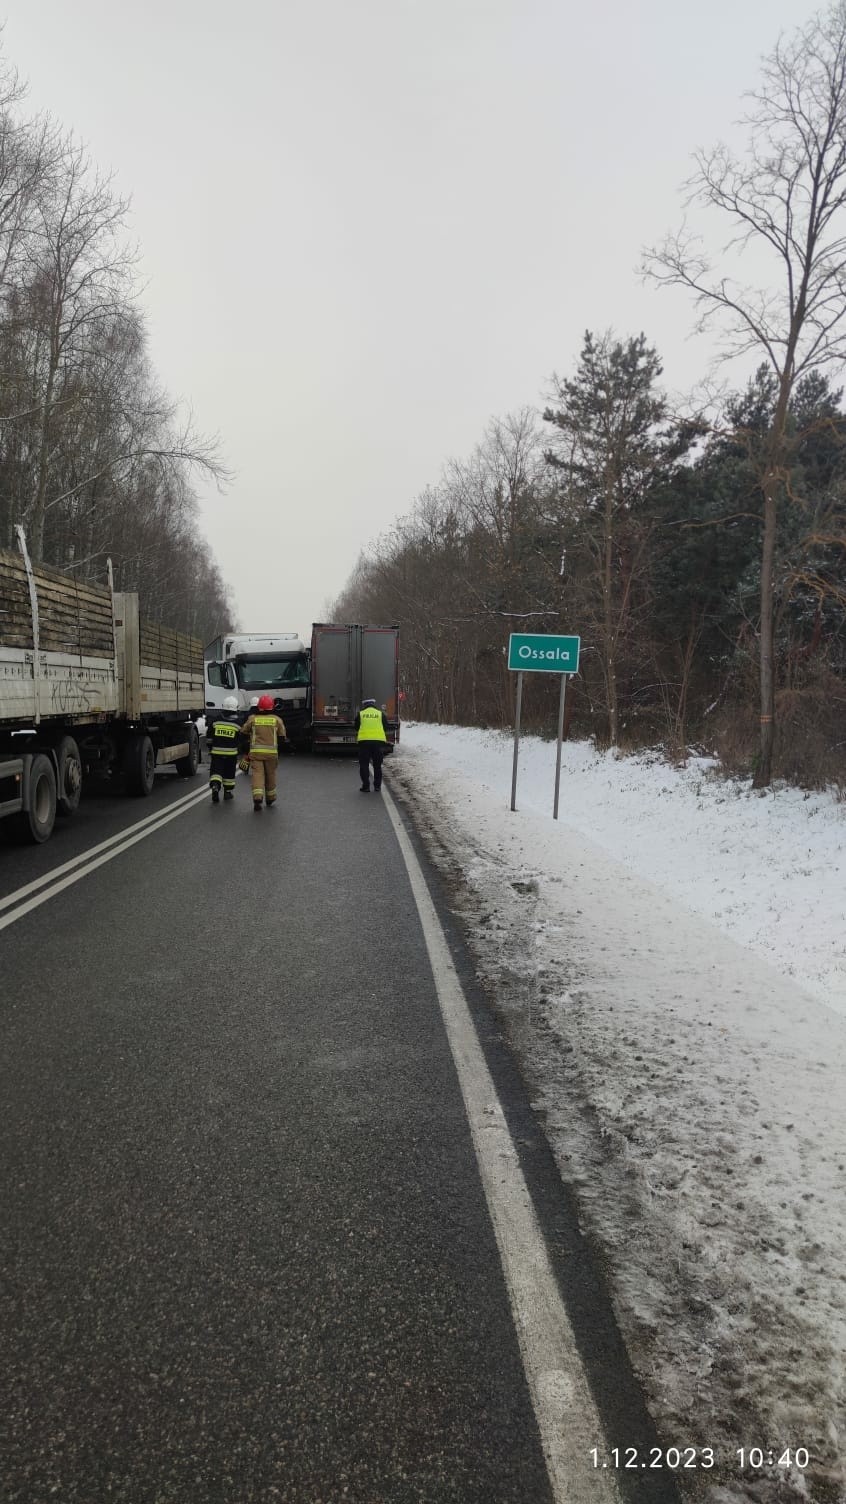 Karambol w miejscowości Ossala w powiecie staszowskim. Zderzyły się cztery ciężarówki. Droga krajowa numer 79 była całkowicie zablokowana